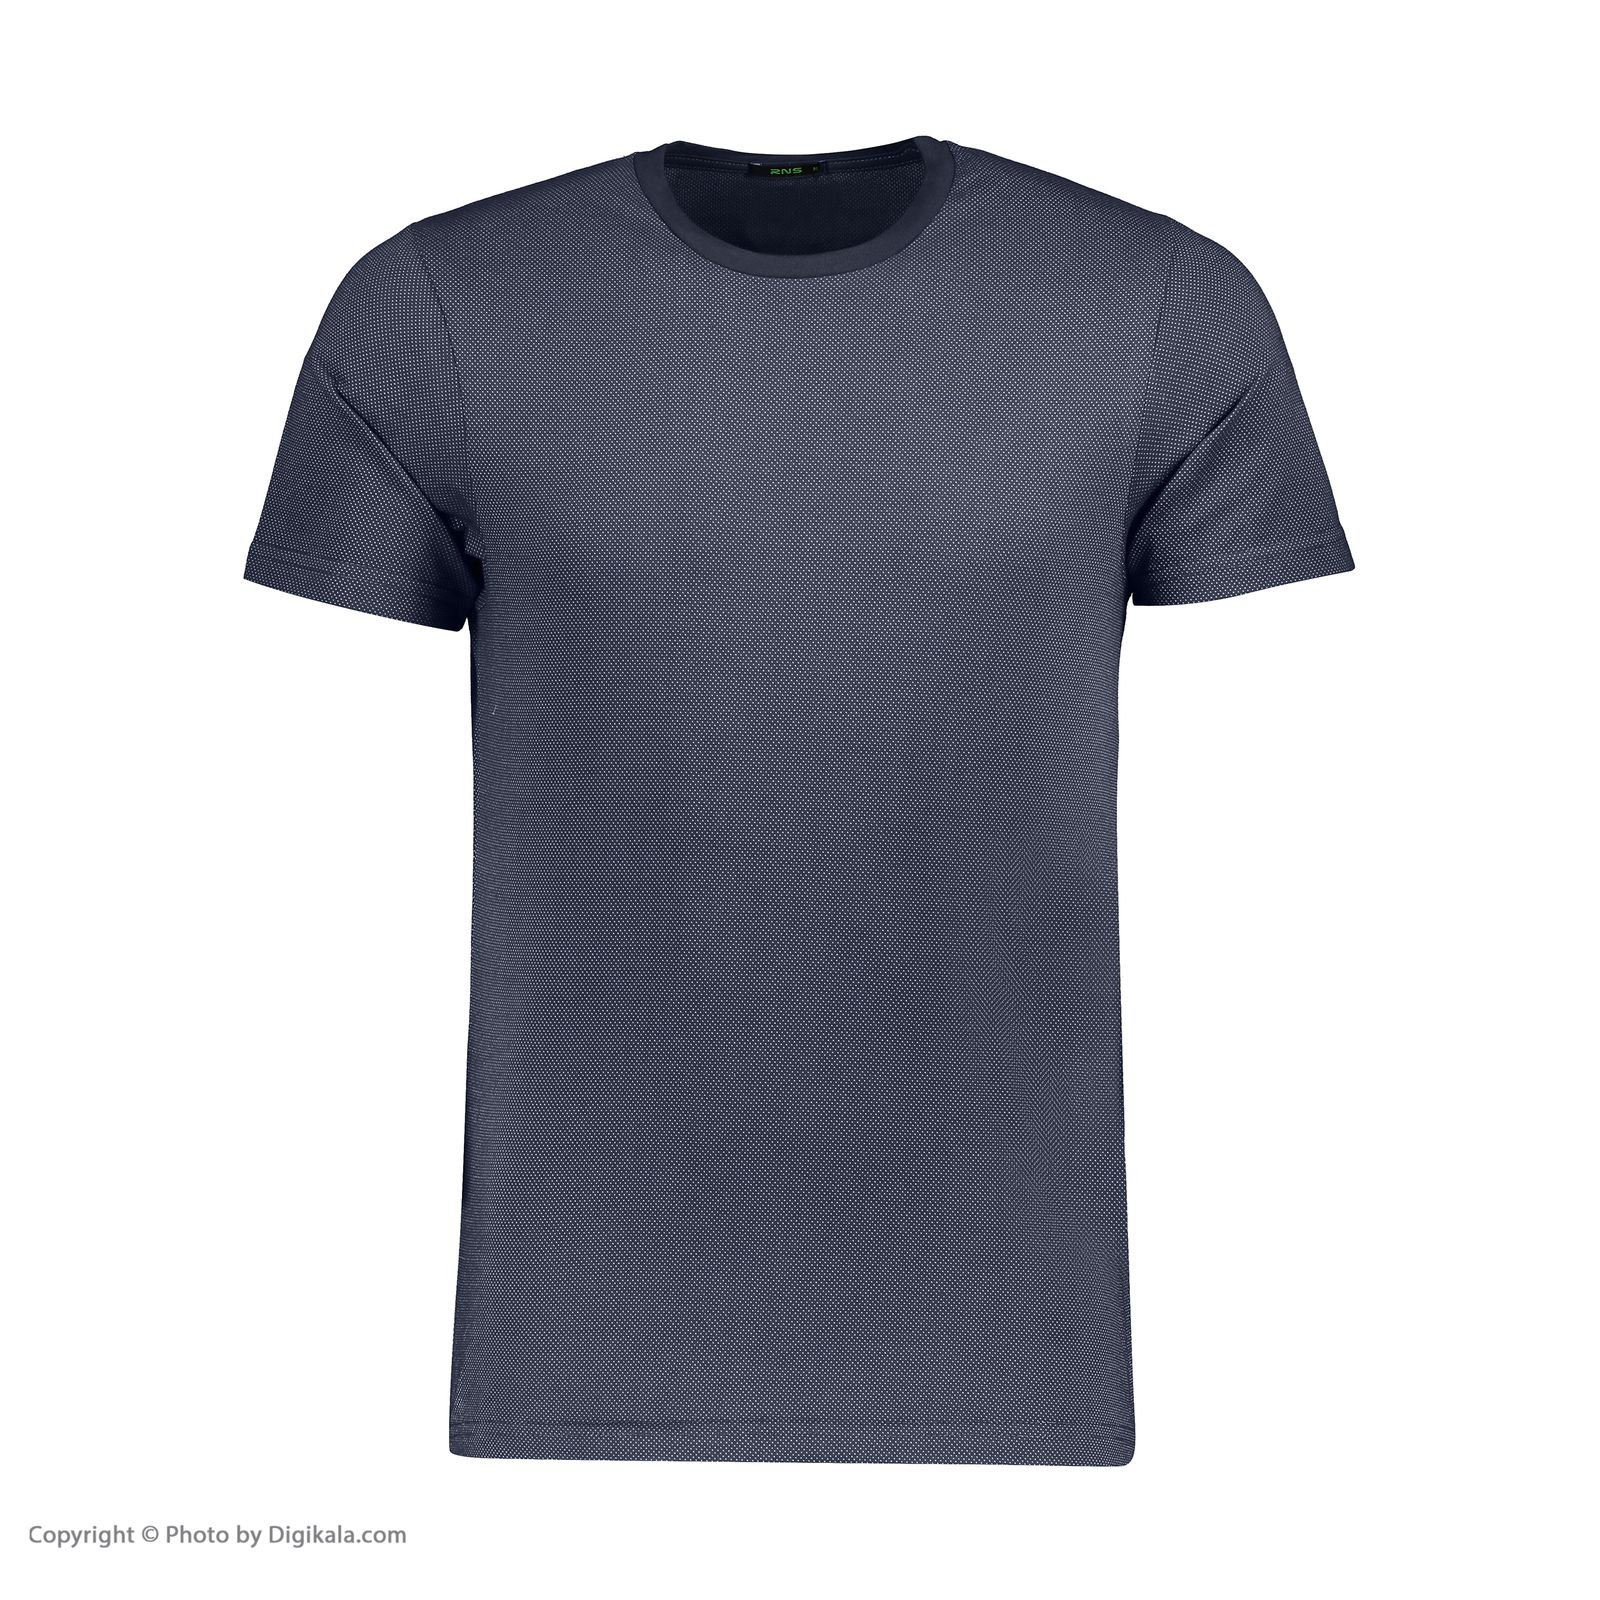 تی شرت مردانه آر ان اس مدل 1131143-59 -  - 2